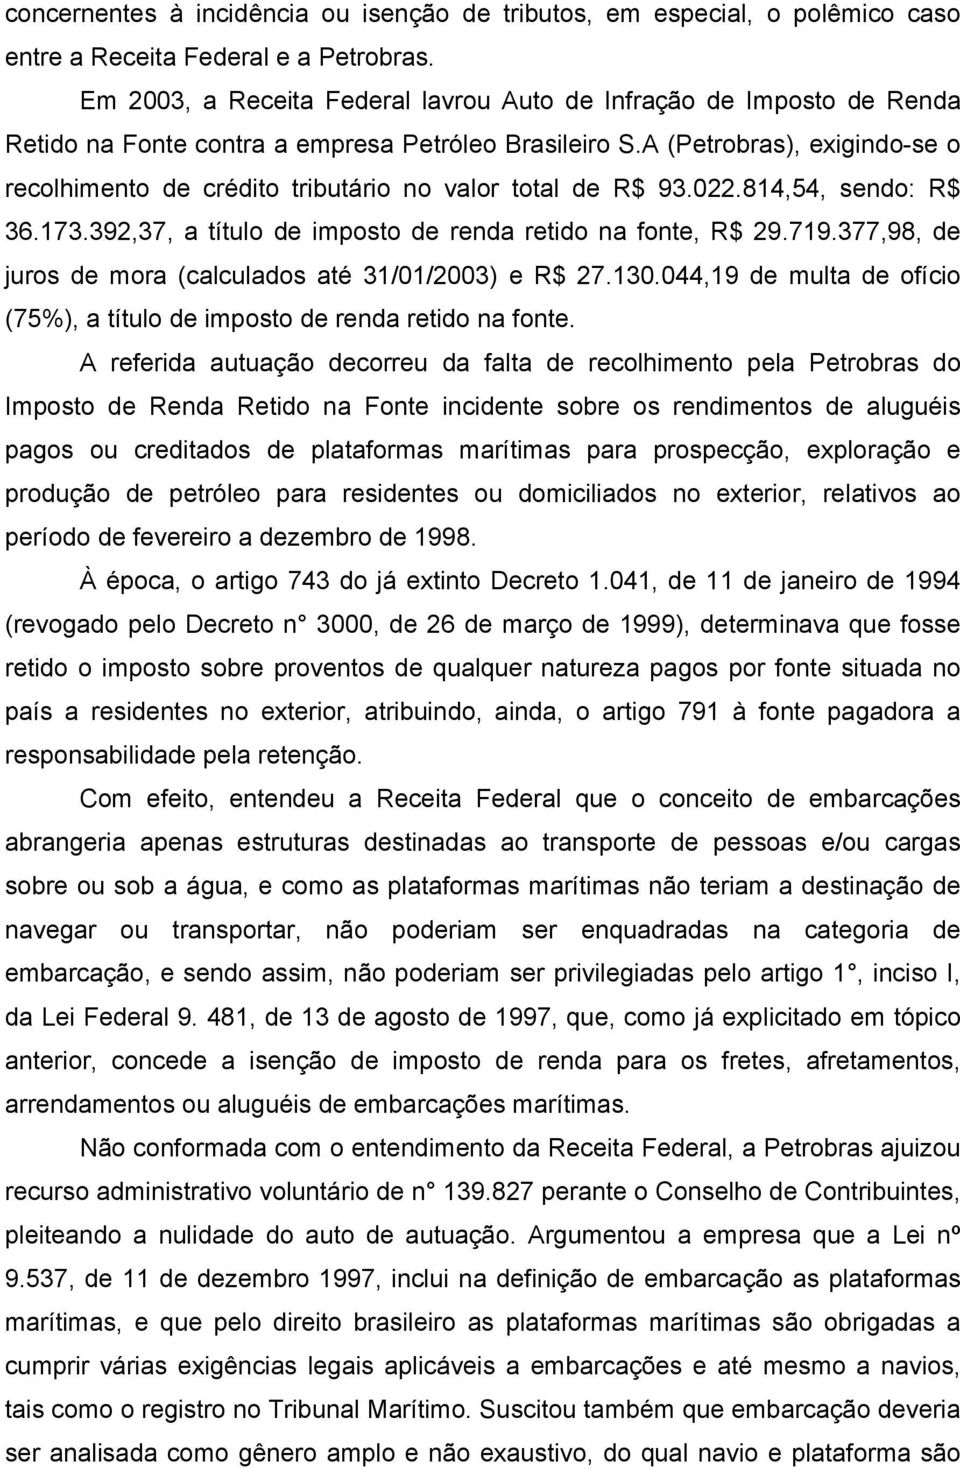 A (Petrobras), exigindo-se o recolhimento de crédito tributário no valor total de R$ 93.022.814,54, sendo: R$ 36.173.392,37, a título de imposto de renda retido na fonte, R$ 29.719.